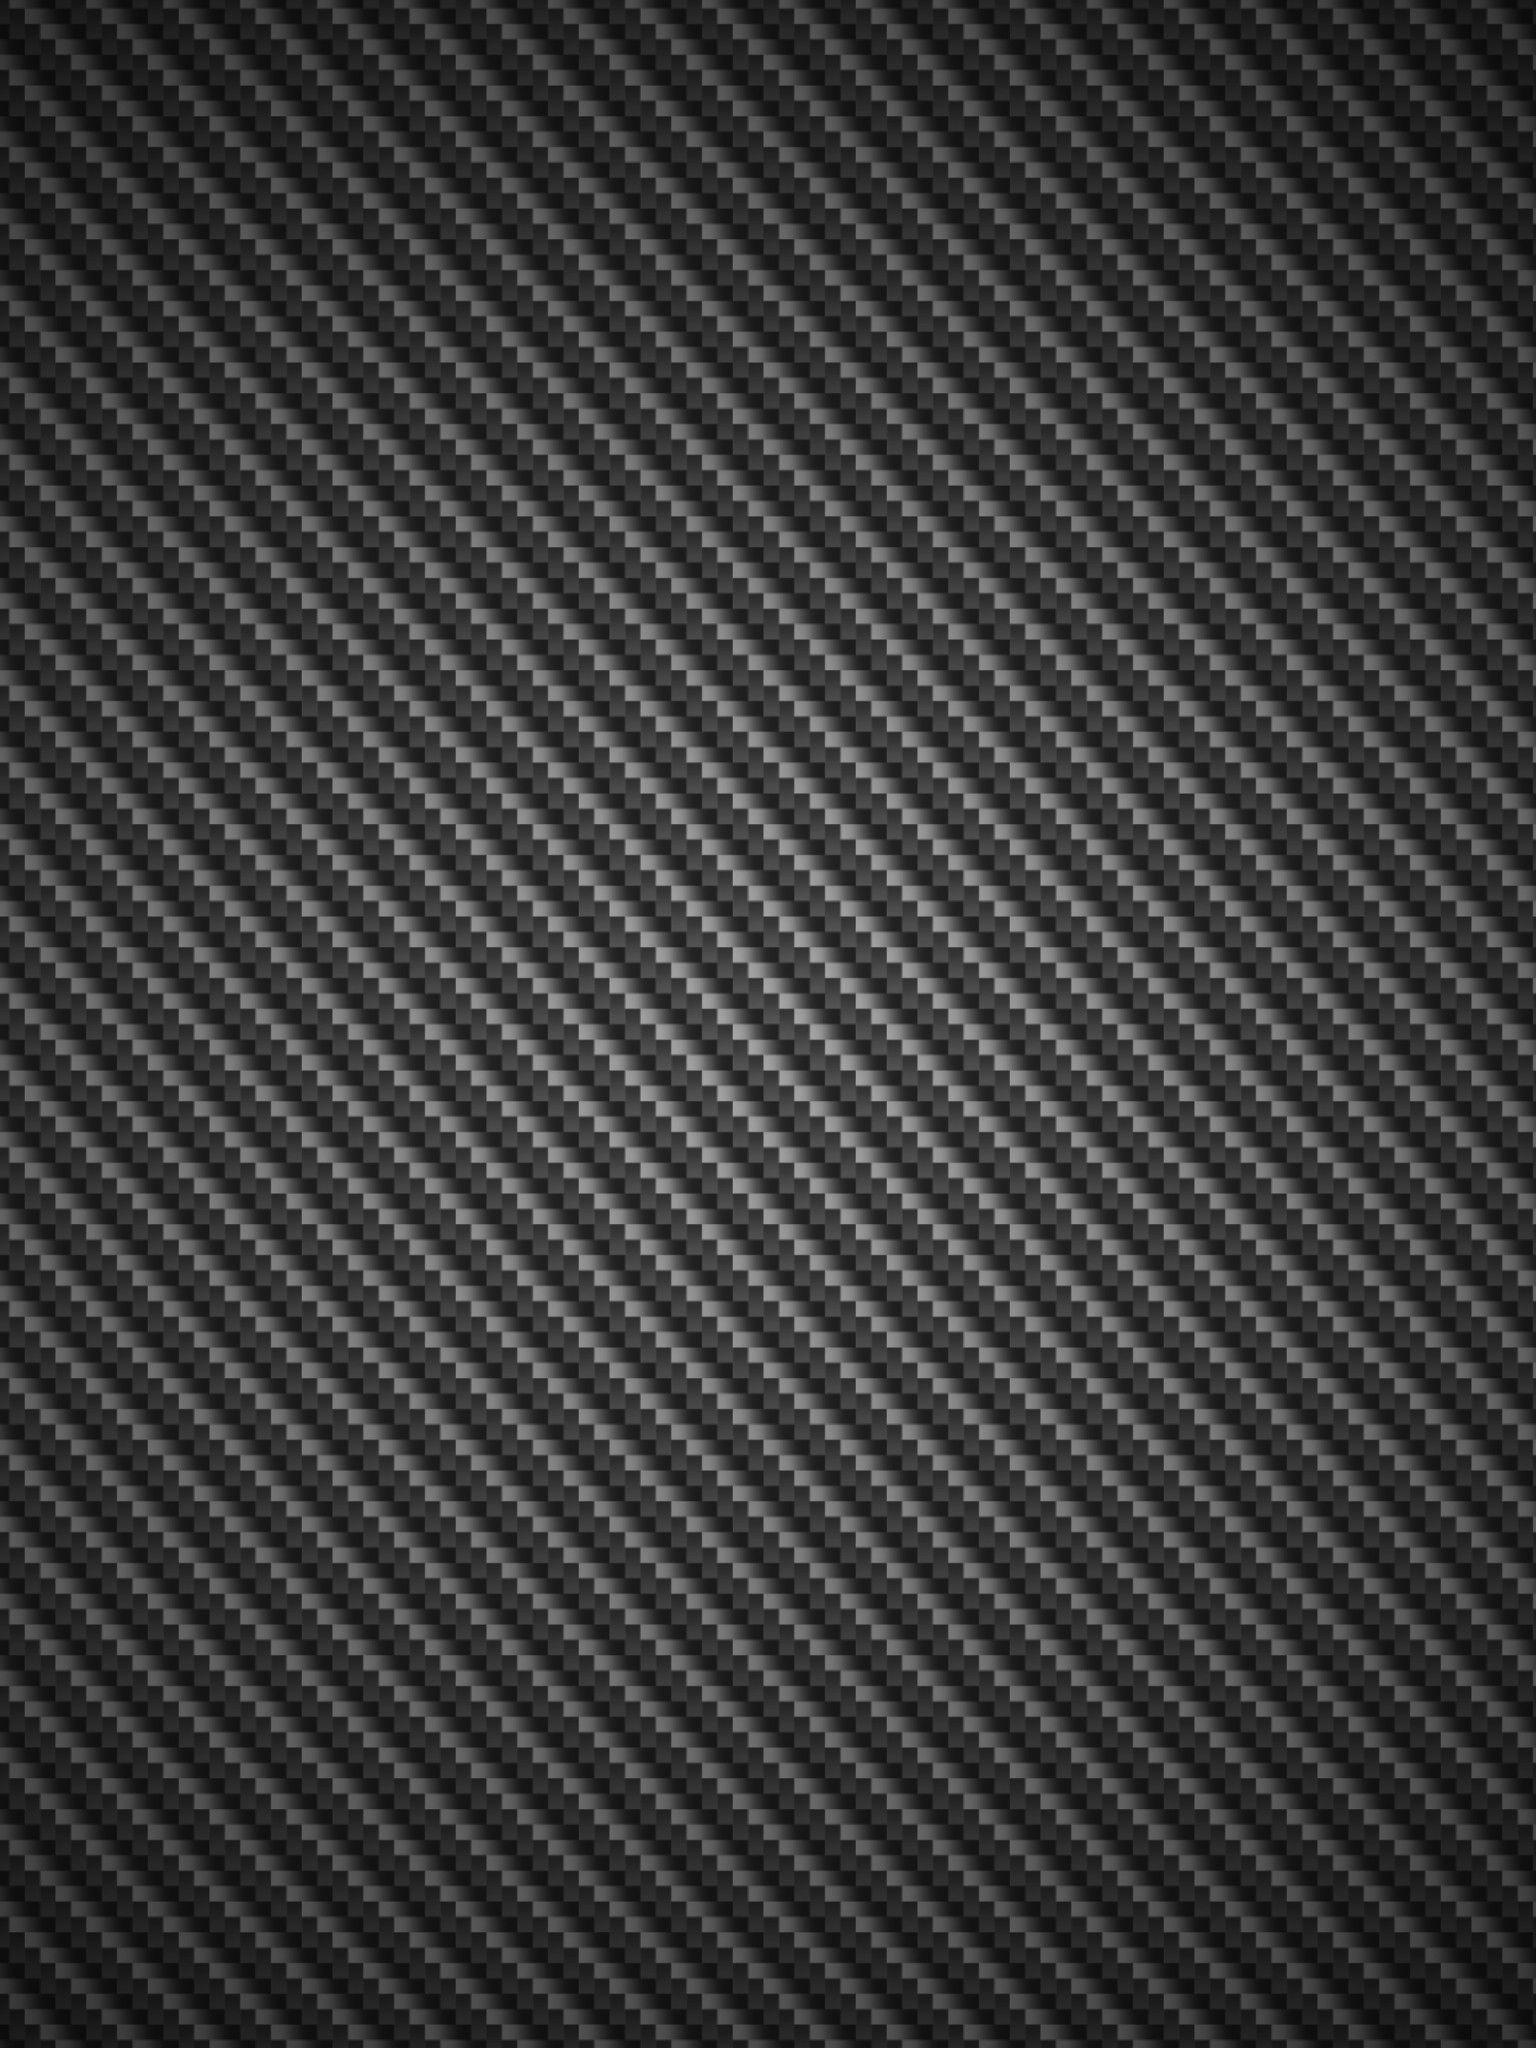 Wallpaper For > Blue Carbon Fiber Wallpaper 1920x1080